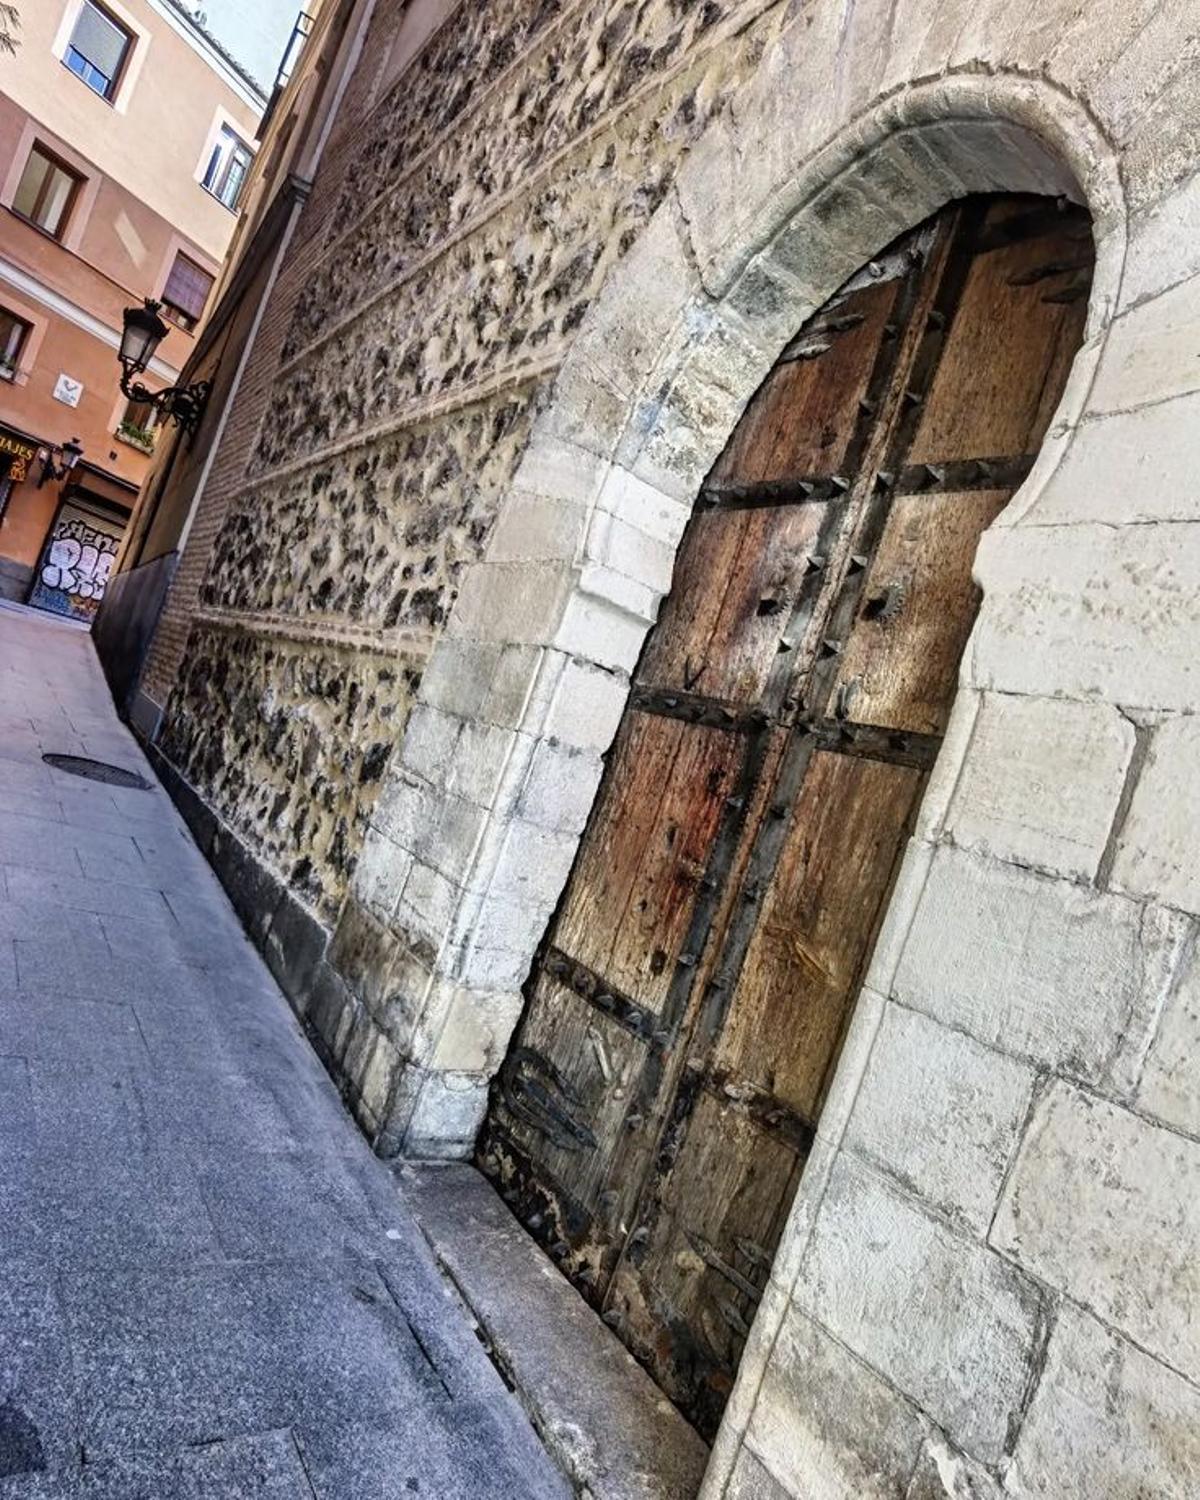 La puerta más antigua de Madrid